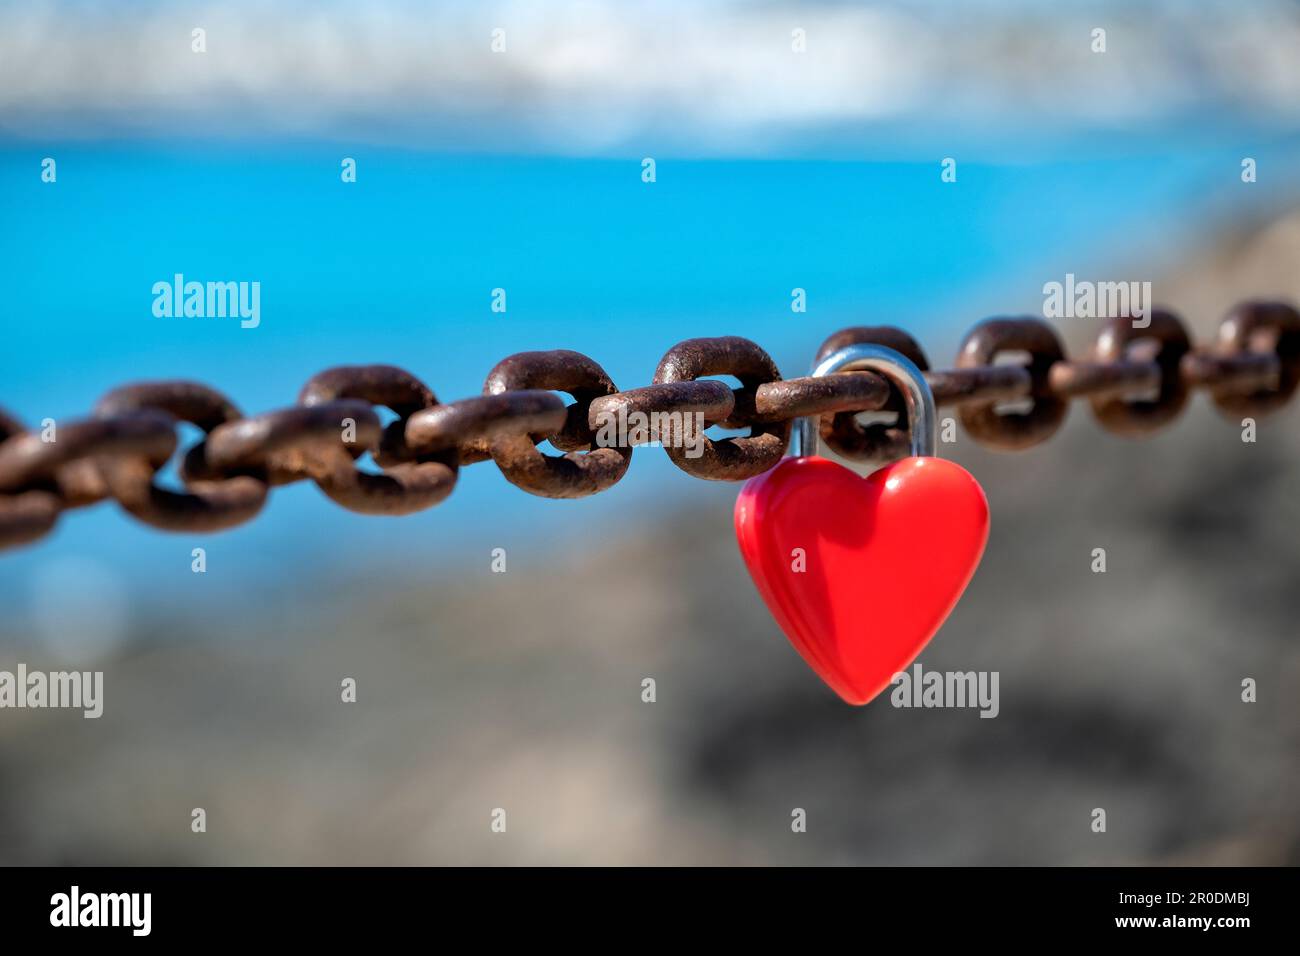 Un unique cadenas rouge, non marqué, en forme de coeur, d'amour ou d'amour attaché à une chaîne épaisse par des amoureux pour symboliser leur affection ou leur amour Banque D'Images